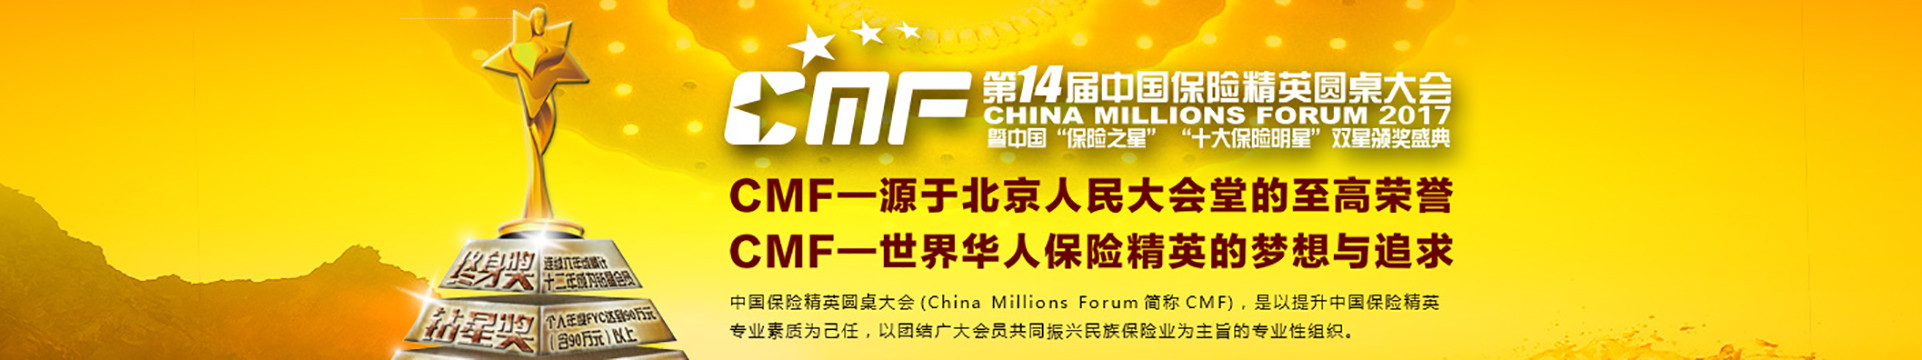 2017第十四届CMF中国保险精英圆桌大会